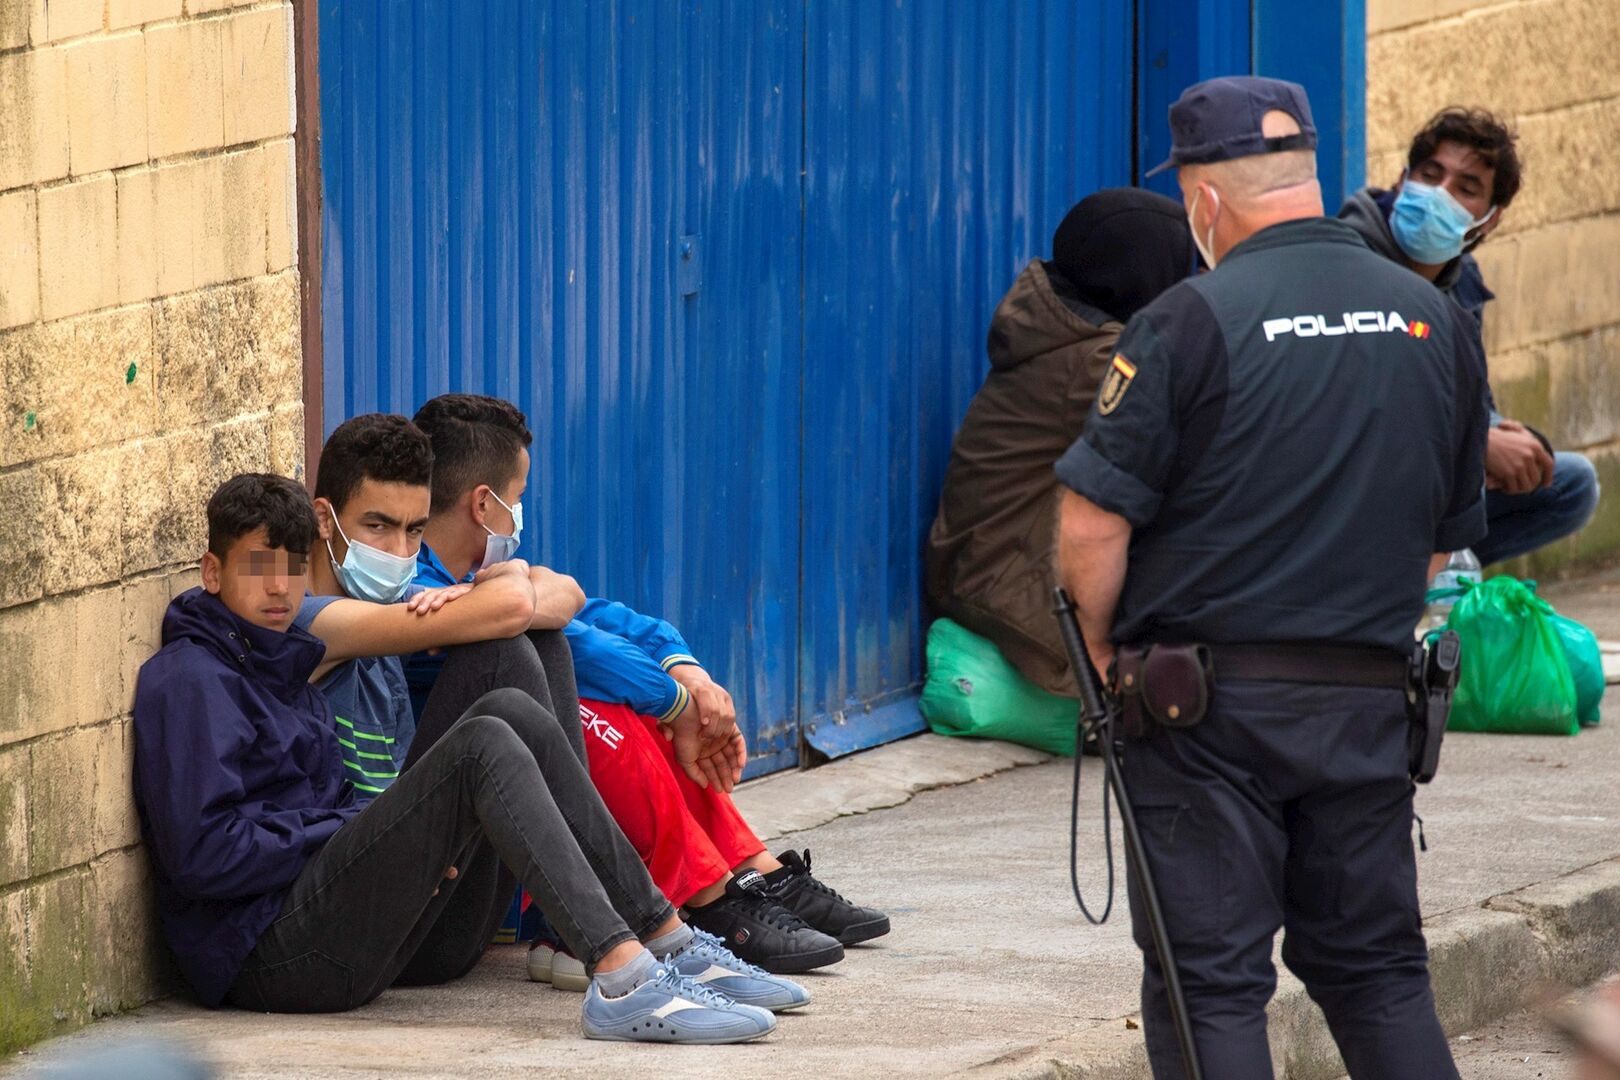 Jóvenes marroquíes provocan el caos en las calles de Ceuta - Página 3 Menas-inmigrantes-ceuta-21052021.jpg?_ga=2.35225505.1697639260.1622583209-52891909